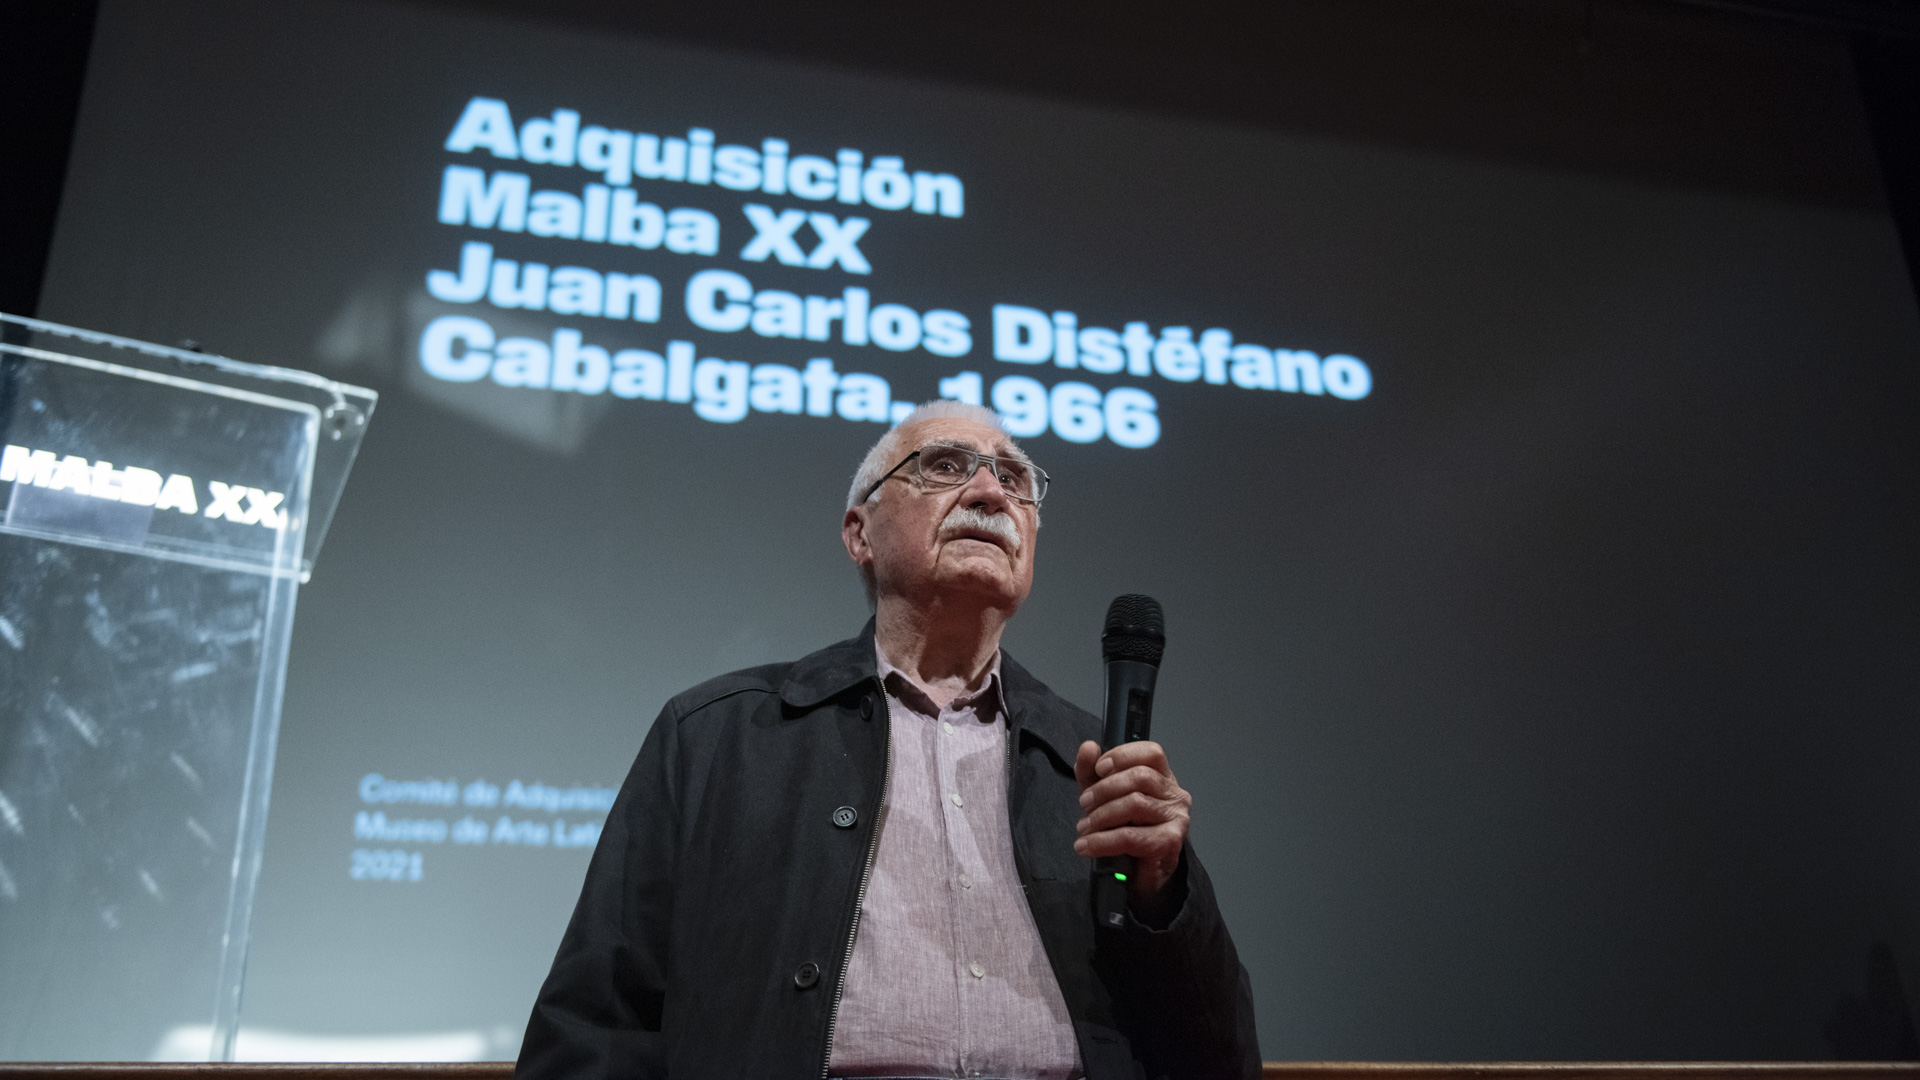 Durante el acto, se anunció la obra seleccionada por el Comité de Adquisiciones del Malba para celebrar los 20 años del museo. Se trata de "Cabalgata" de Juan Carlos Distéfano